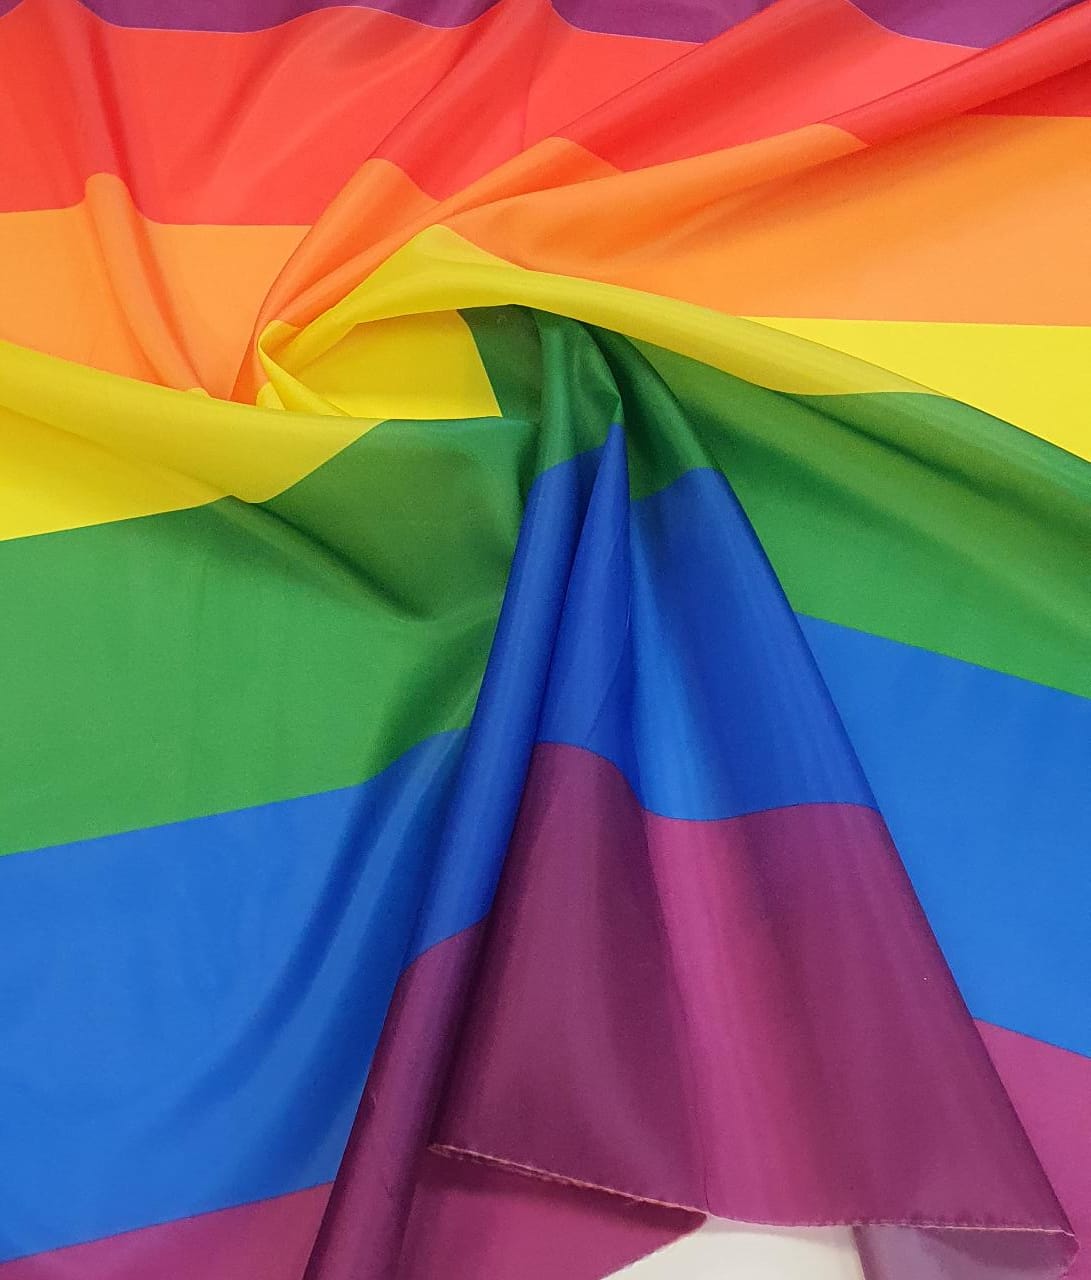 Bandeira Orgulho LGBT em Faliete